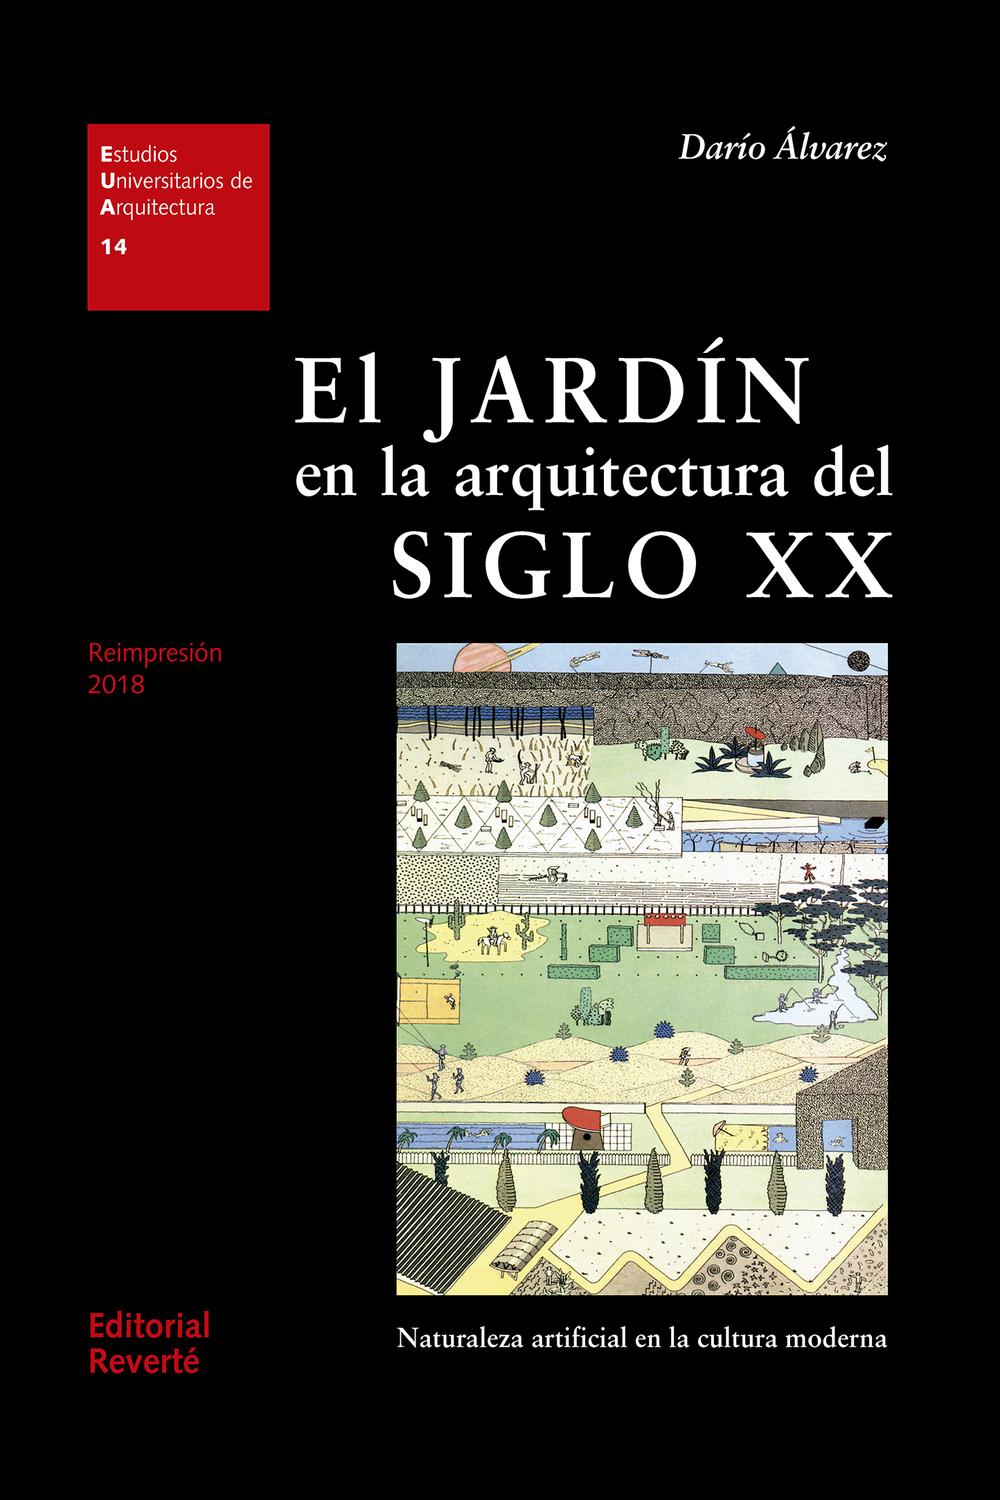 El jardín en la arquitectura del siglo XX - Darío Álvarez, Jorge Sainz